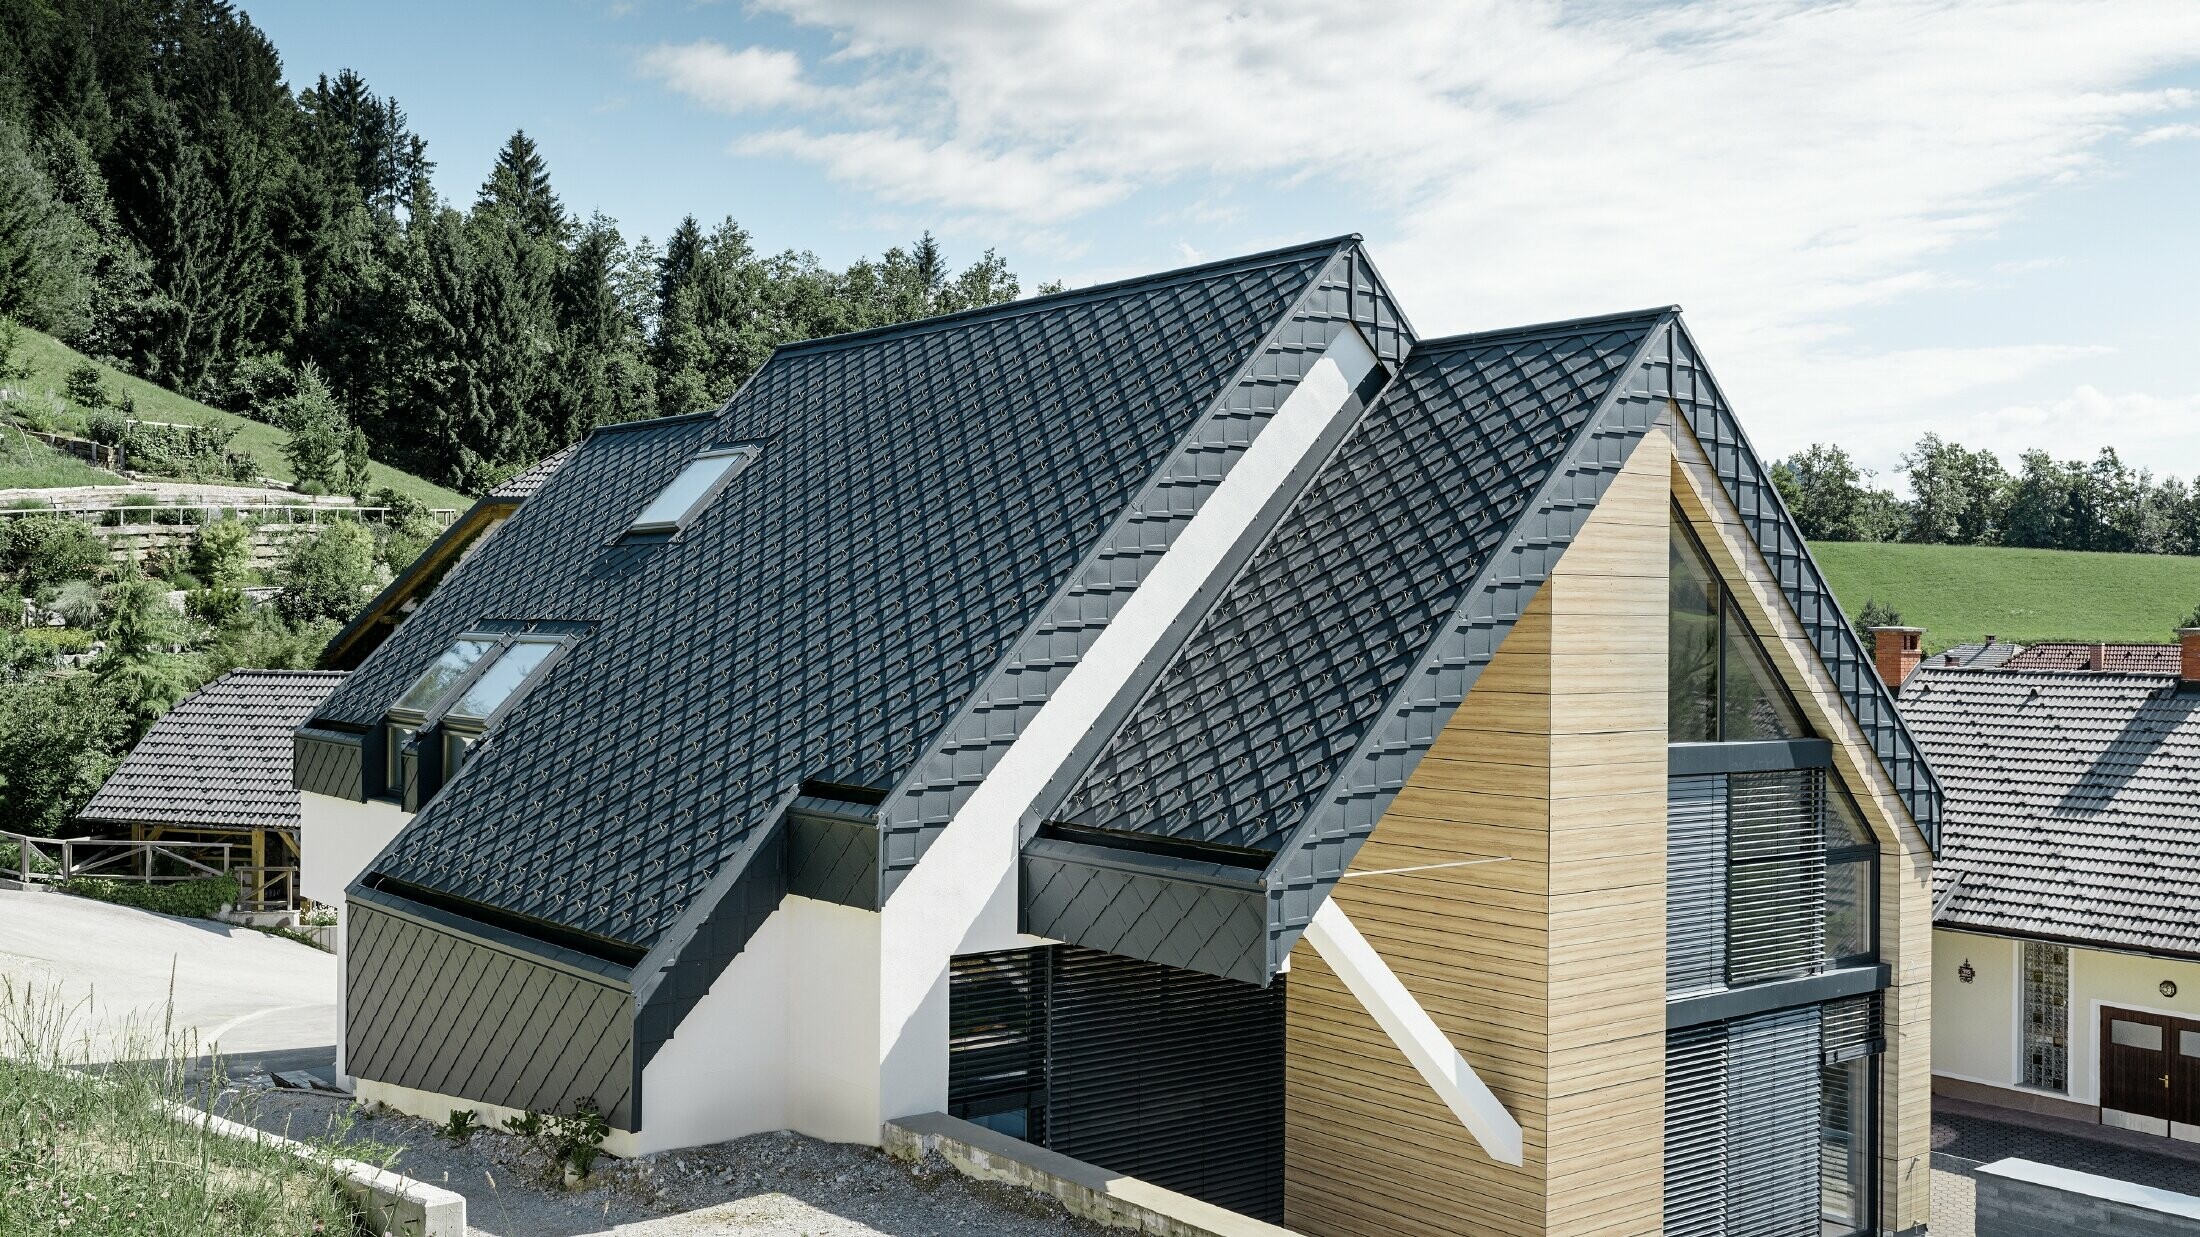 Casa unifamiliare con tetto a due falde senza cornicione, con una facciata effetto legno ed un tetto in alluminio in antracite